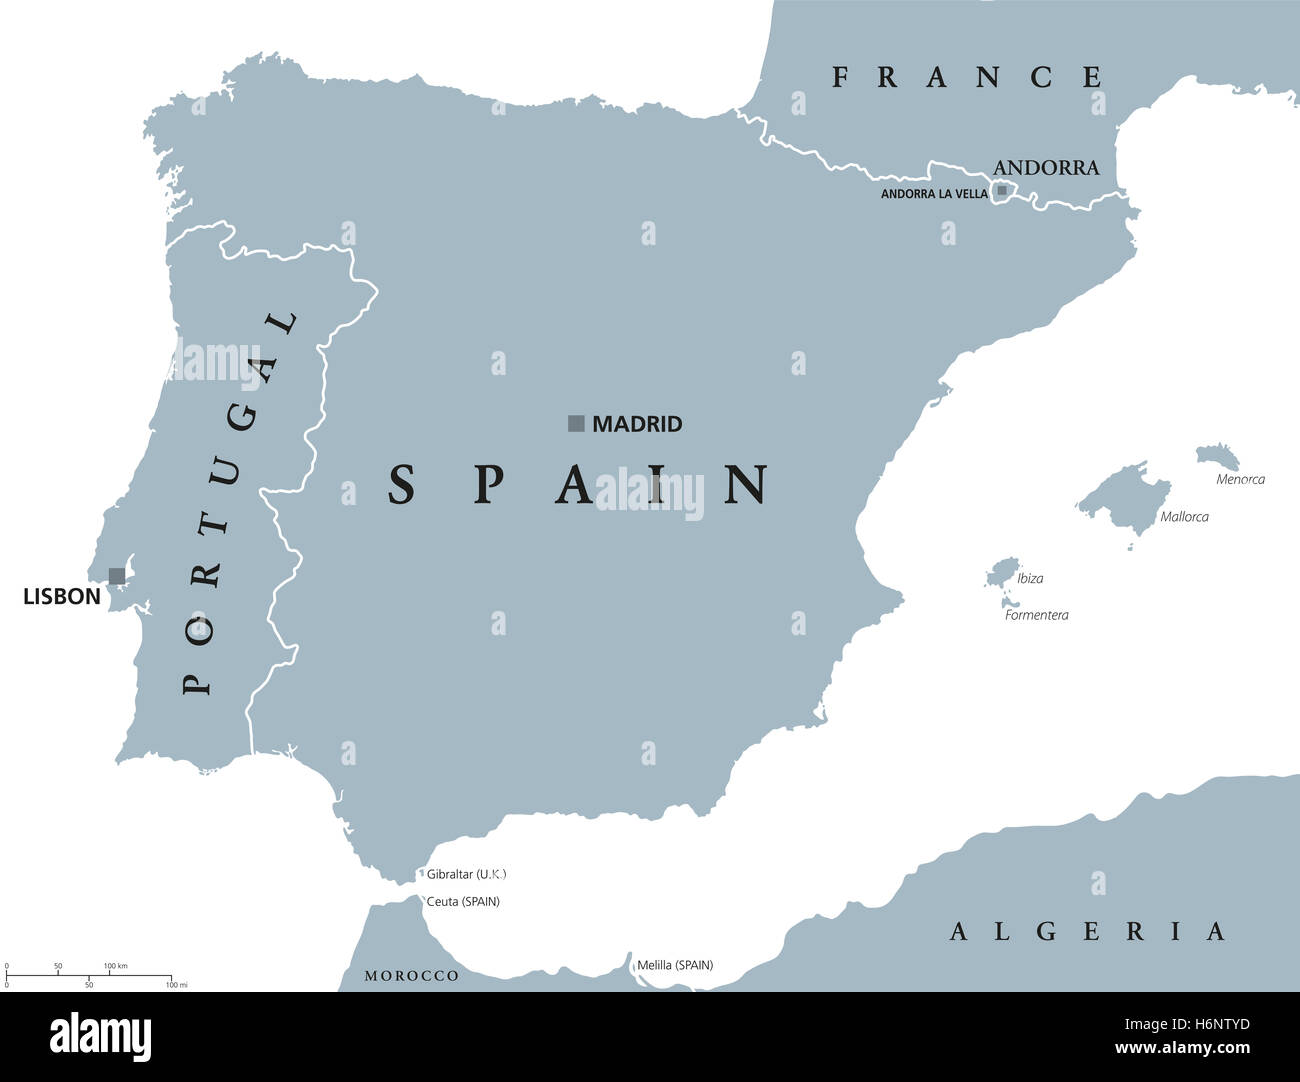 Portugal und Spanien politische Karte mit Hauptstädten Lissabon und Madrid, Balearen und nationale Grenzen hinweg. Graue Abbildung. Stockfoto